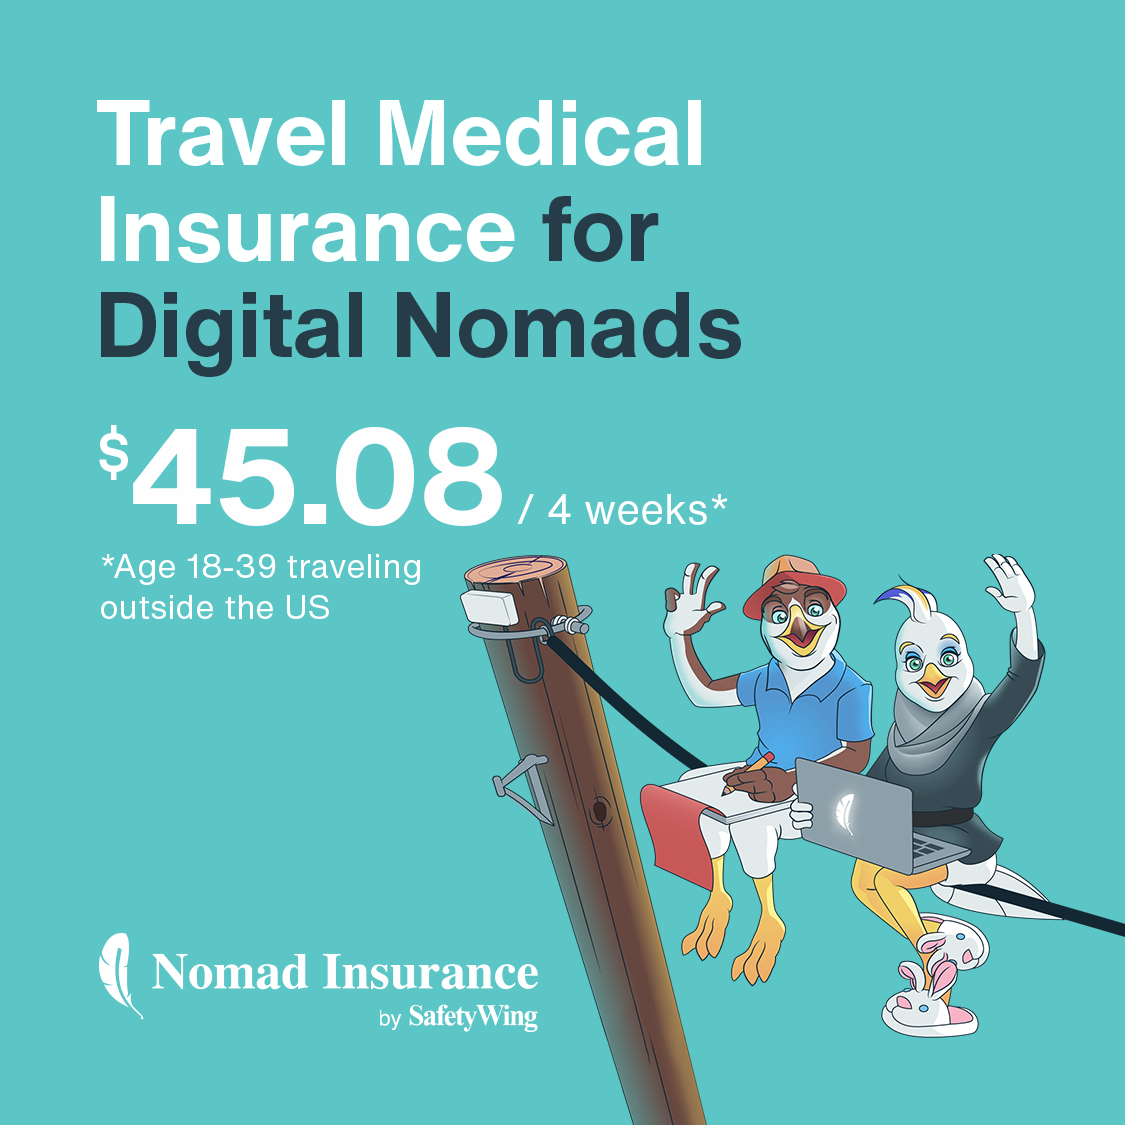 Obtenha um seguro médico de viagem!